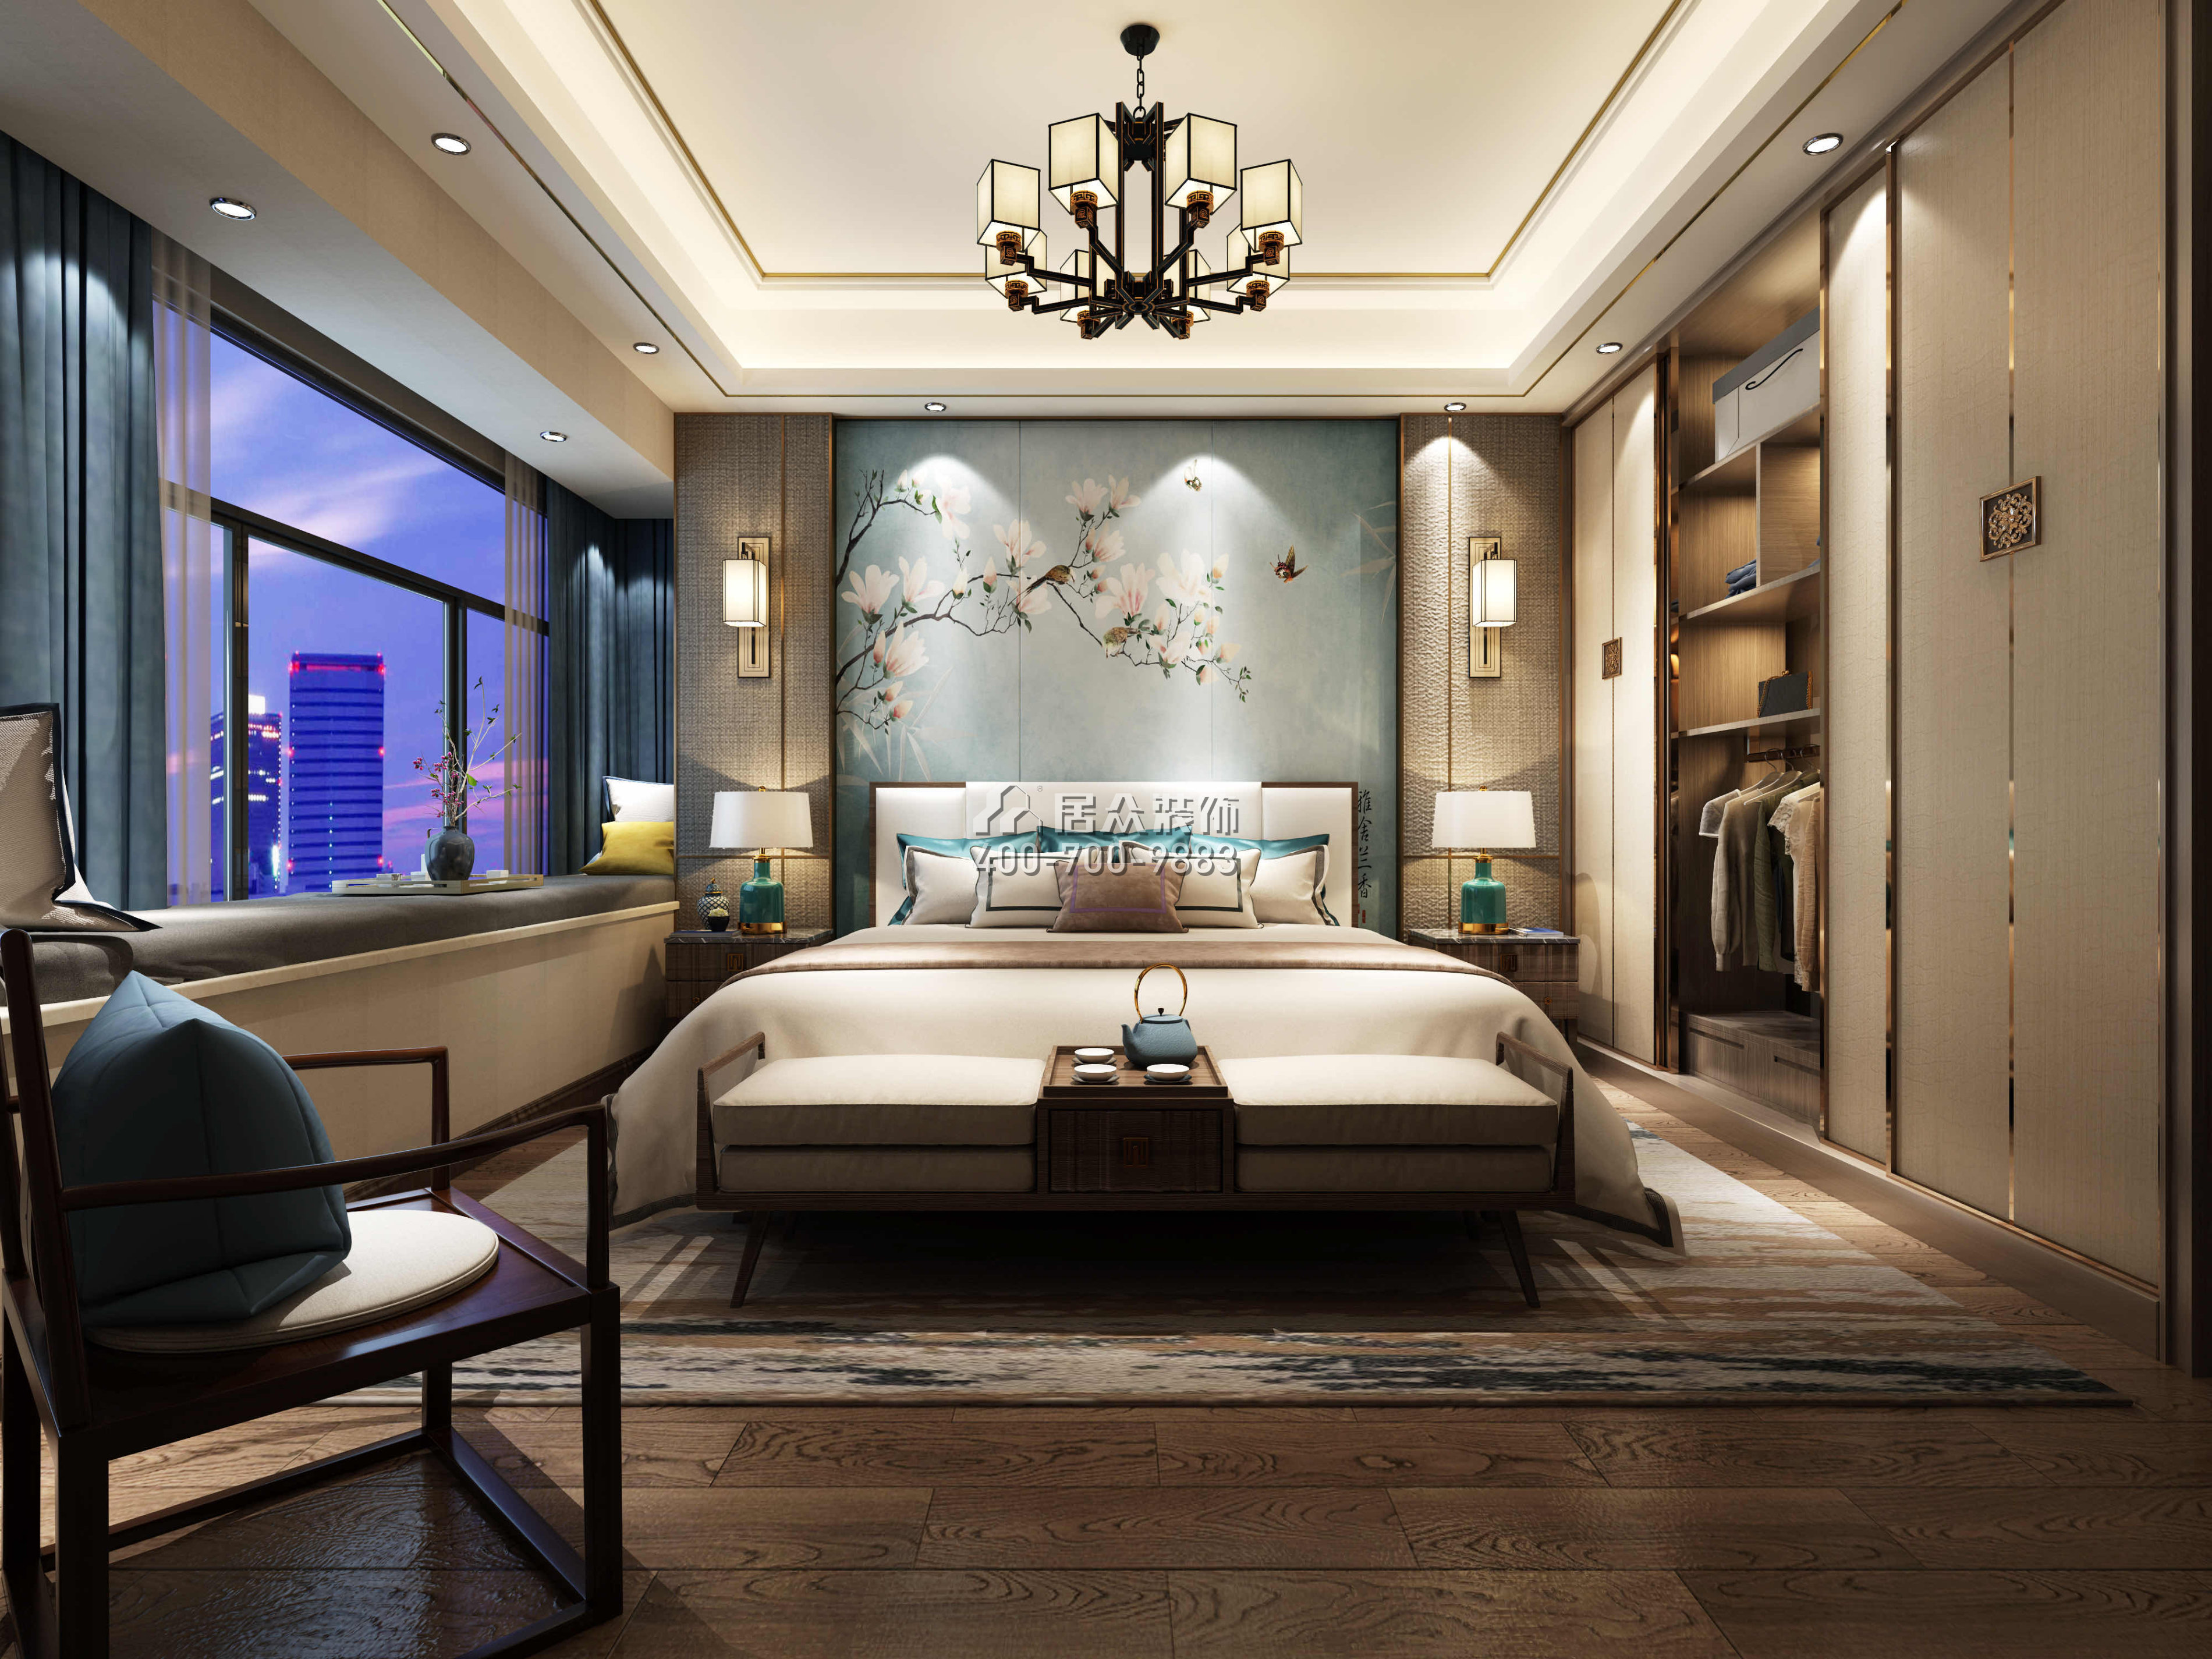 保利海上五月花320平方米中式風格復式戶型臥室裝修效果圖